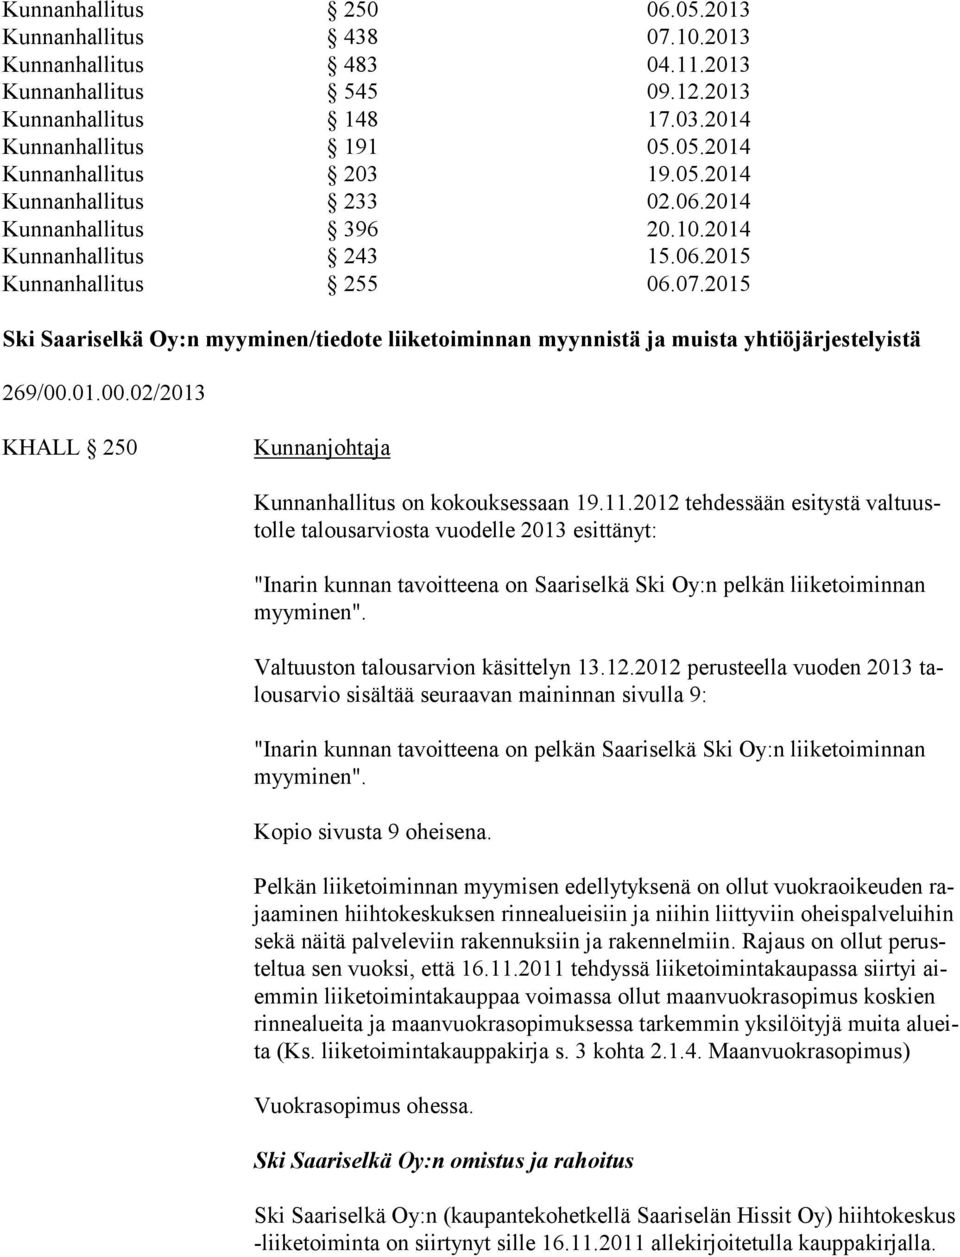 2015 Ski Saariselkä Oy:n myyminen/tiedote liiketoiminnan myynnistä ja muista yhtiöjärjestelyistä 269/00.01.00.02/2013 KHALL 250 Kunnanhallitus on kokouksessaan 19.11.